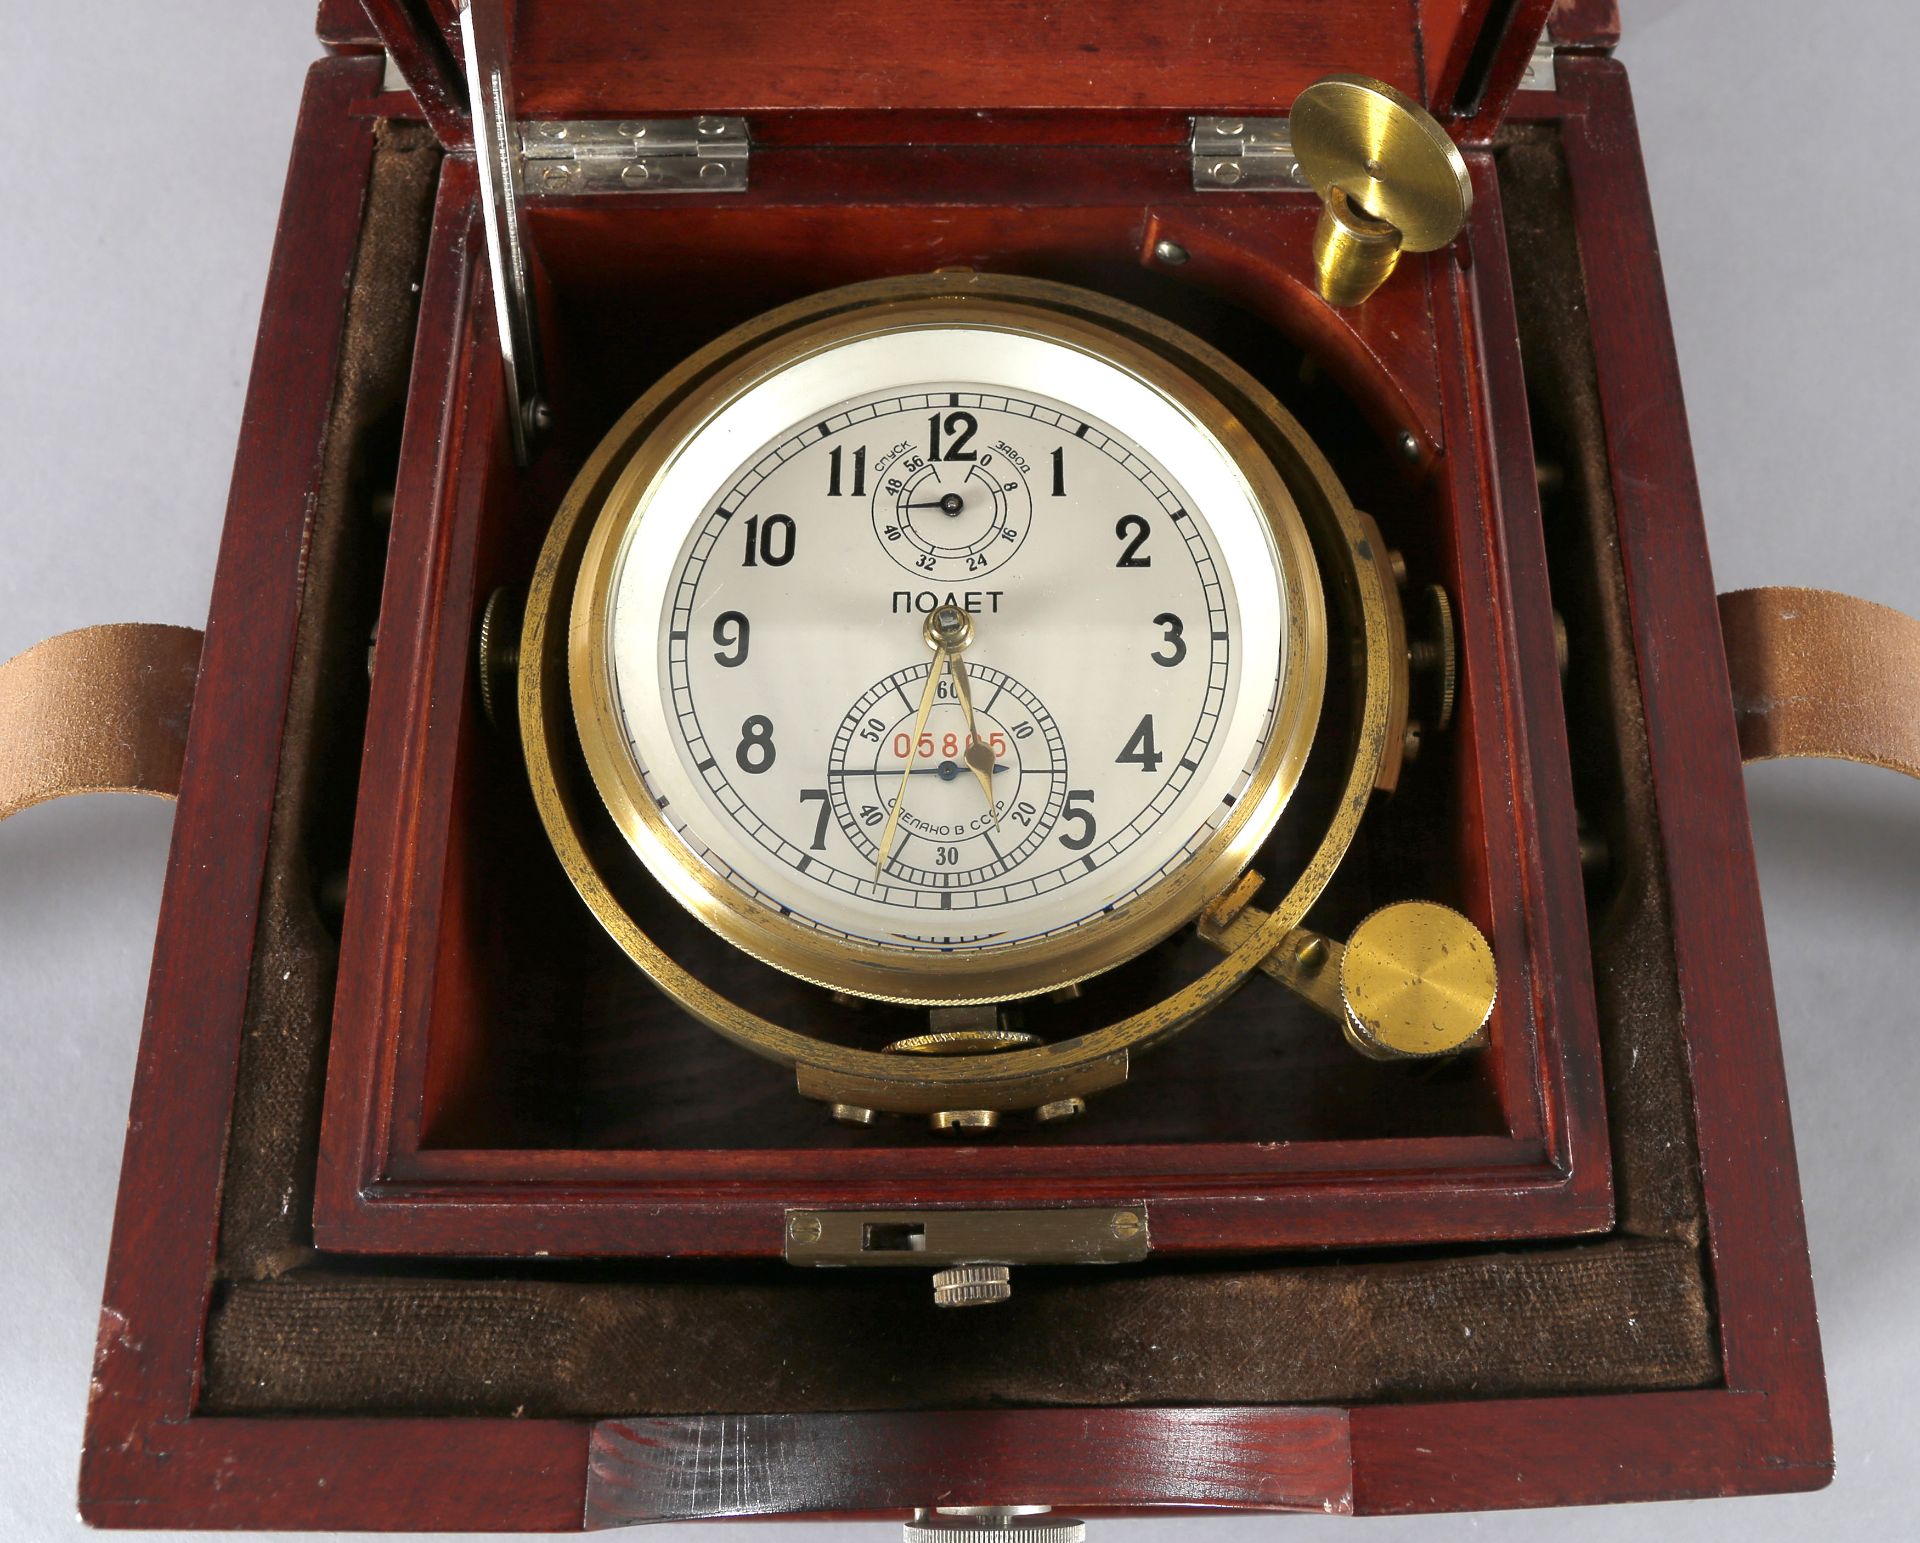 Schiffschronometer 'Poljot', Seriennummer 05805 (auf dem Zifferblatt), wohl um 1970 - Image 3 of 3